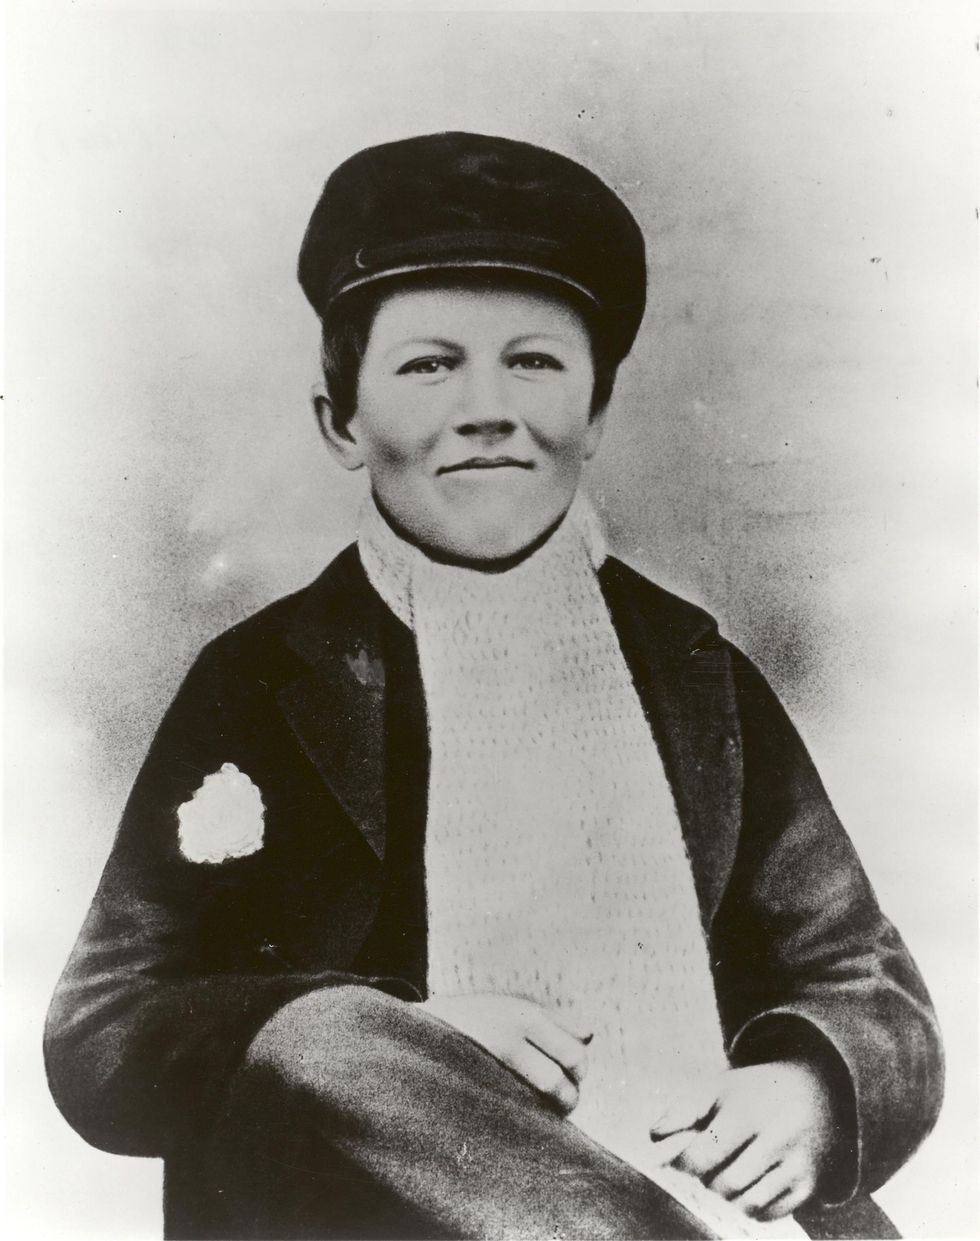 De jonge Thomas Alva Edison die op deze foto zon veertien jaar oud is had revolutionaire ideen waardoor hij vaak afgeleid was van het simpele werk dat hij moest doen voor de baantjes die hij had als jongeman